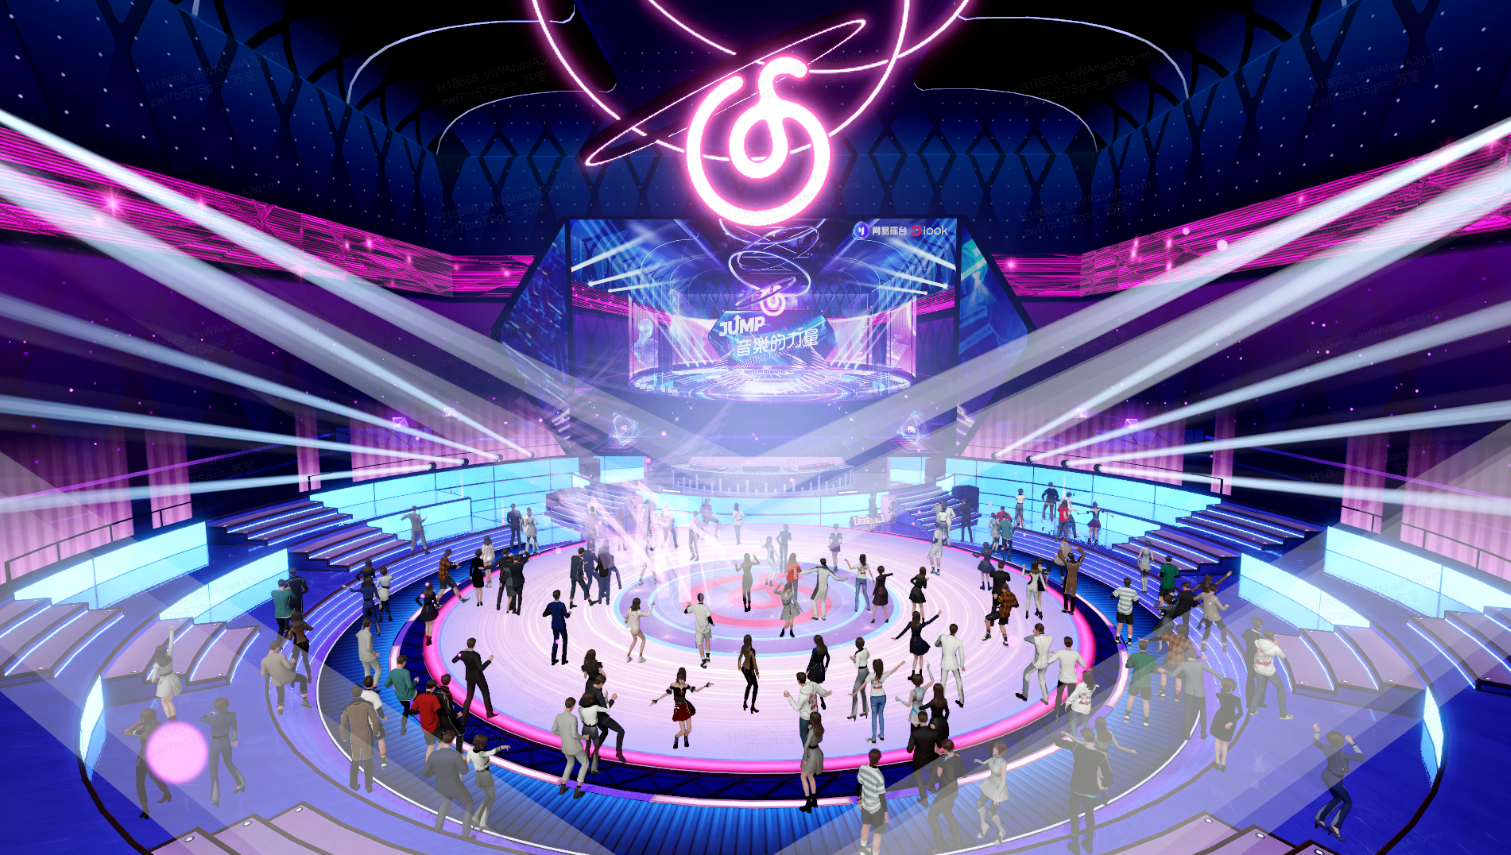 这是一张展示虚拟现实音乐会场景的插画，人们在色彩斑斓的灯光下聚集，中央有个巨大的DJ台和跳舞的人群。